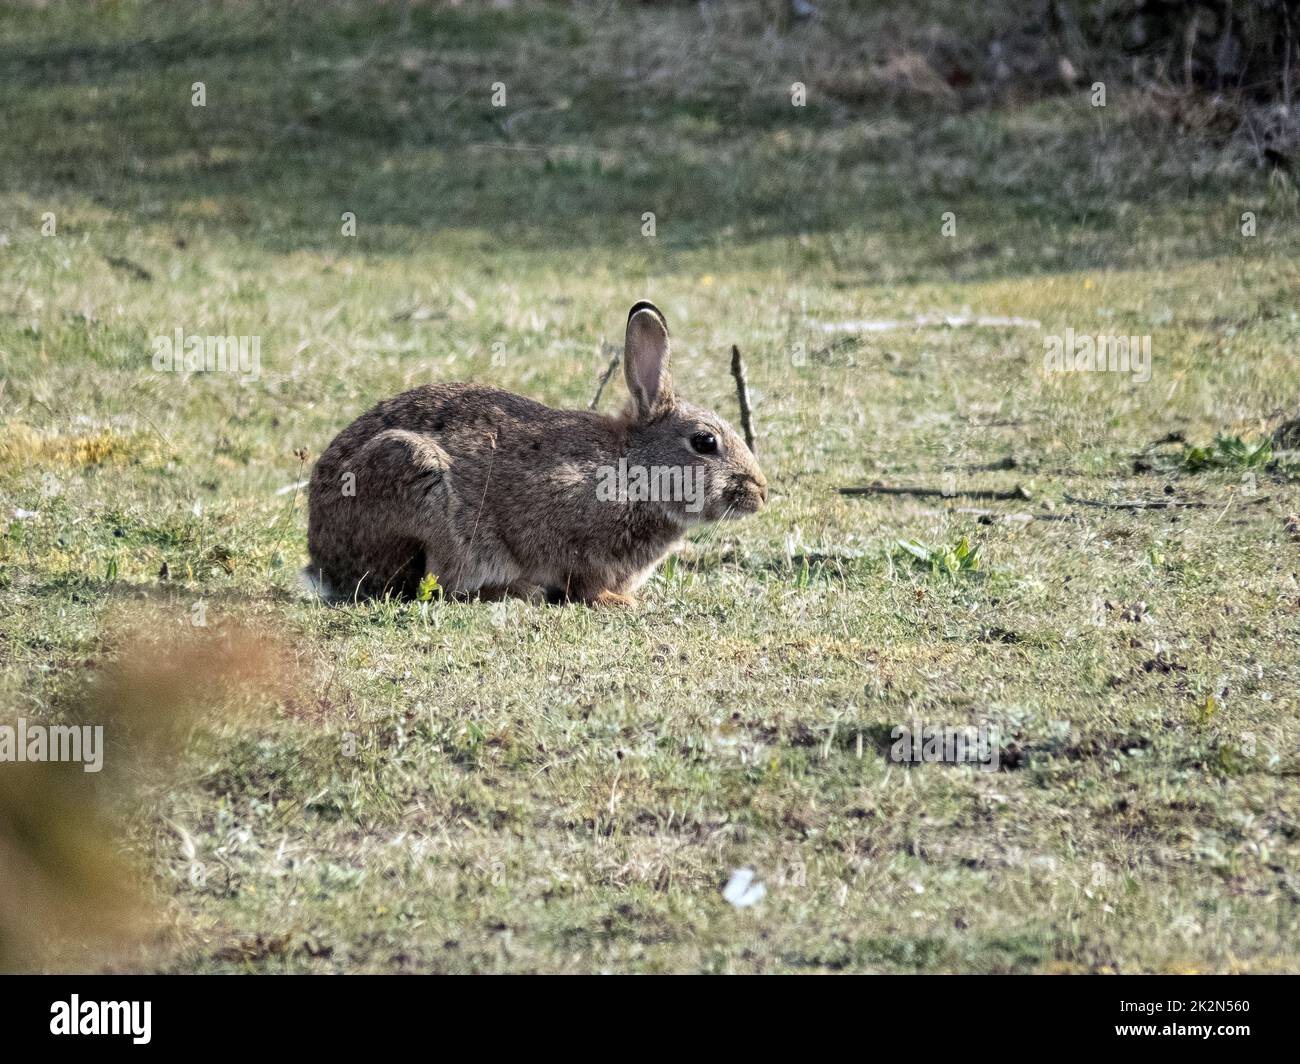 wild rabbit, gotland, sweden Stock Photo